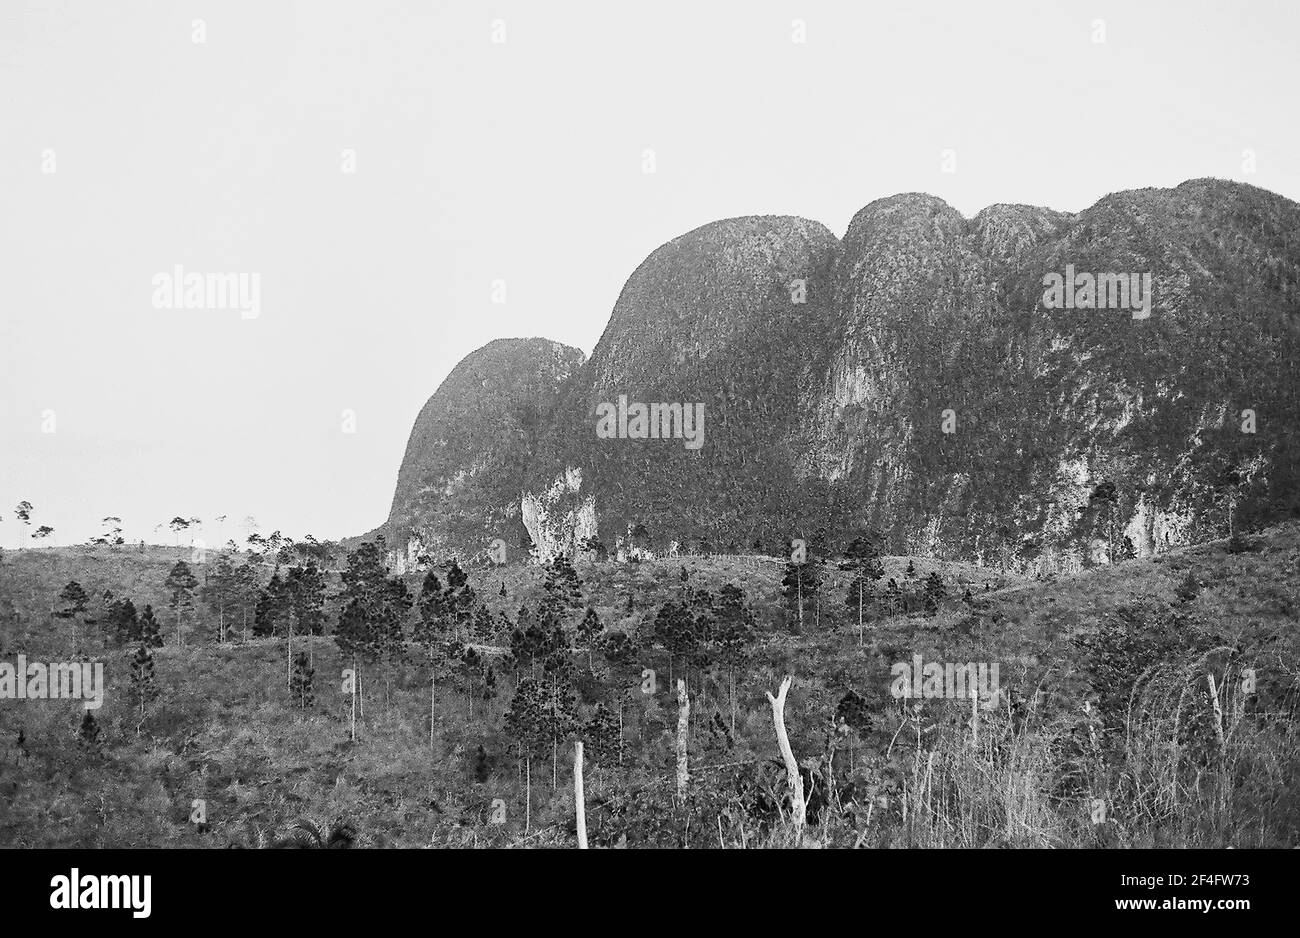 Mogotes, Pinar del Rio, Cuba, Pinar del Rio (Cuba : Province), 1964. From the Deena Stryker photographs collection. () Stock Photo